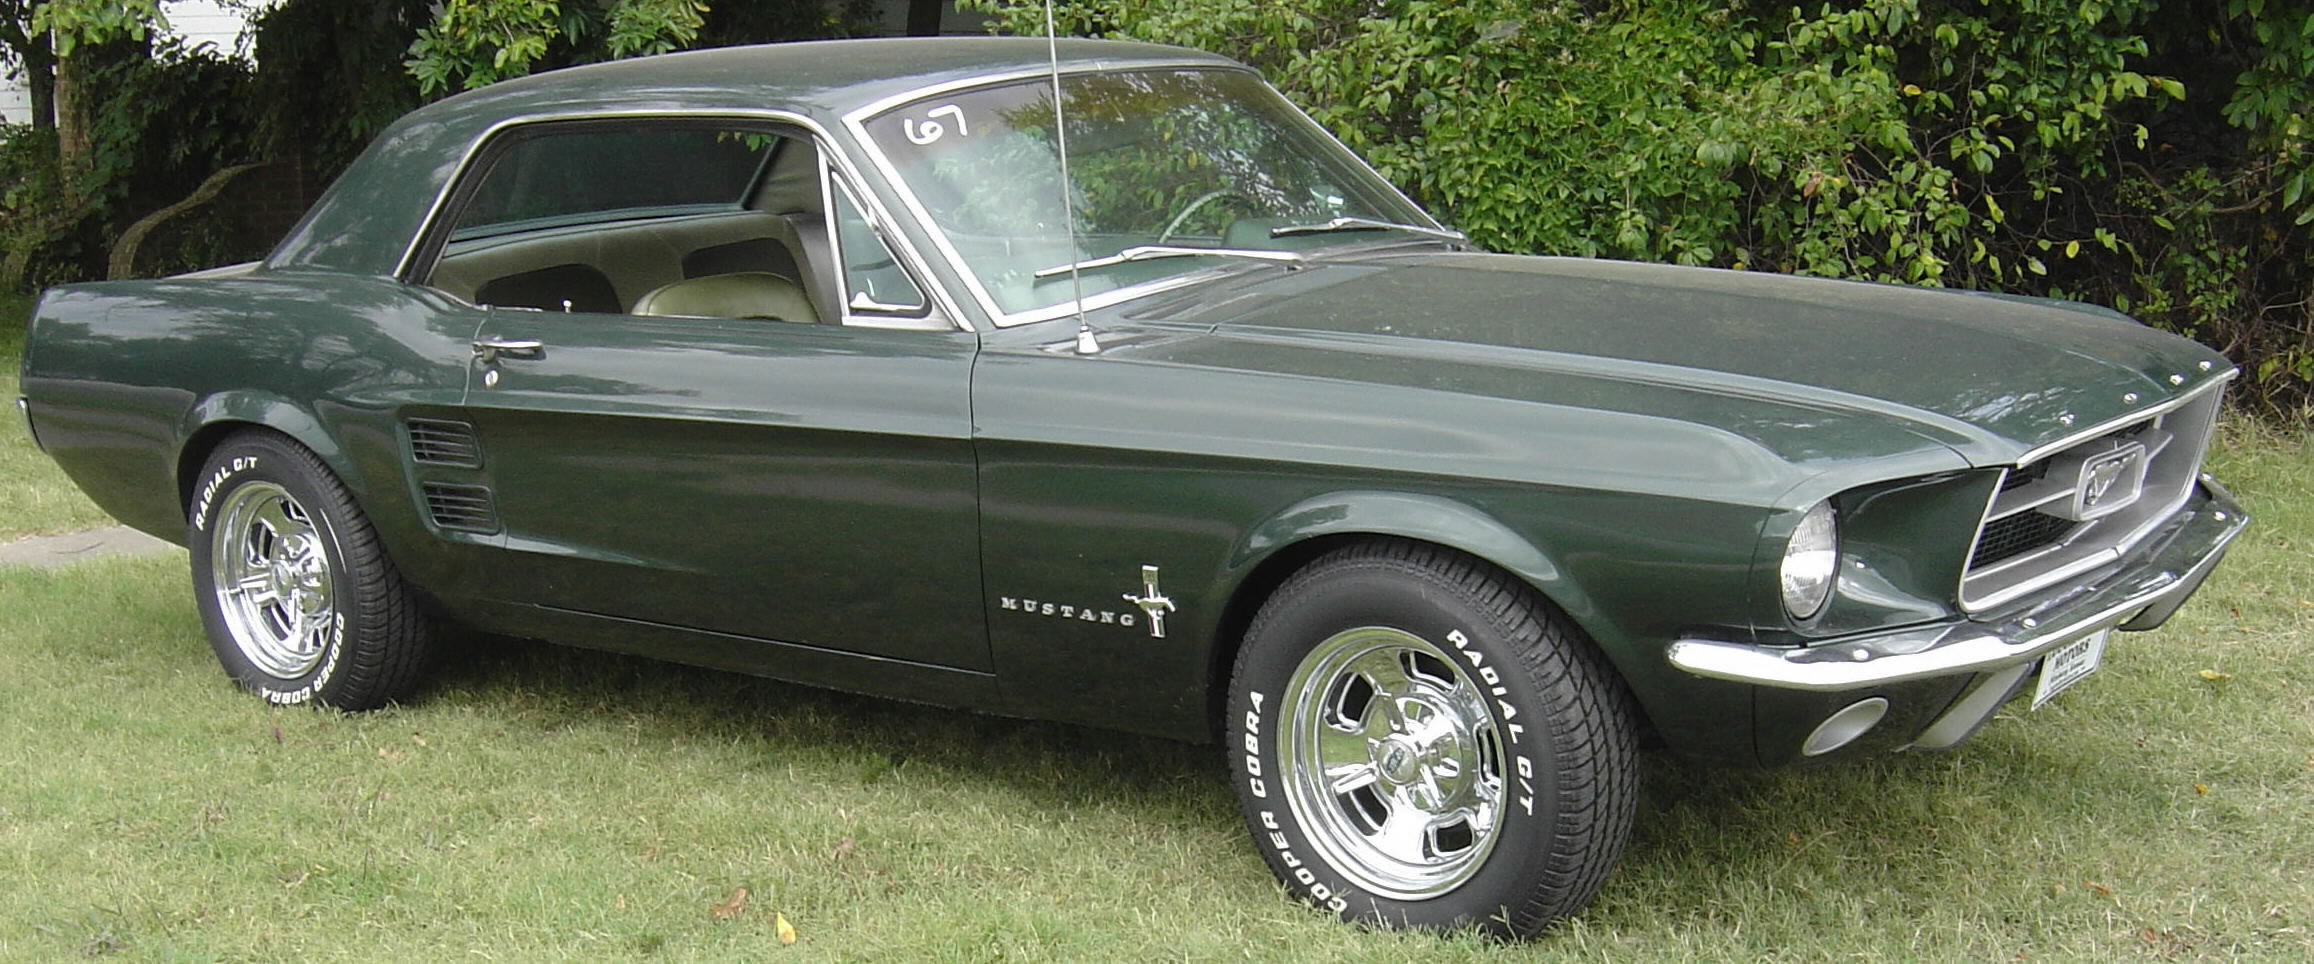 1967 Ford Mustang, SOLD!, green, light green vinyl interior, V-8, 289 miles, 